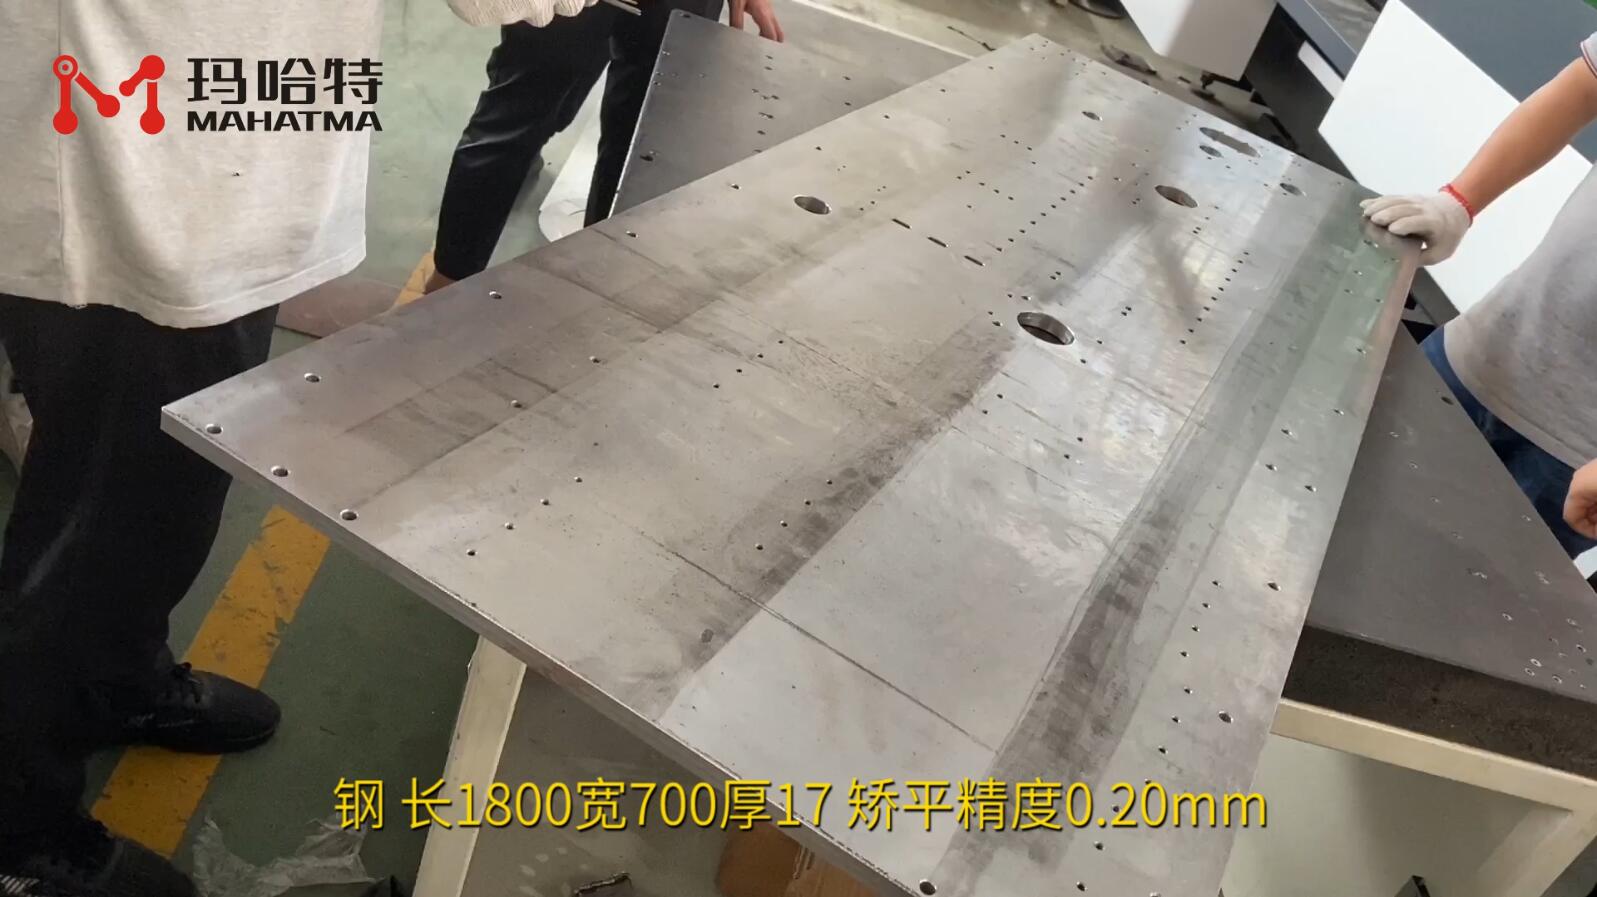 钢 MHT150-800 长方形 长1800宽700厚17 矫平精度0.20mm